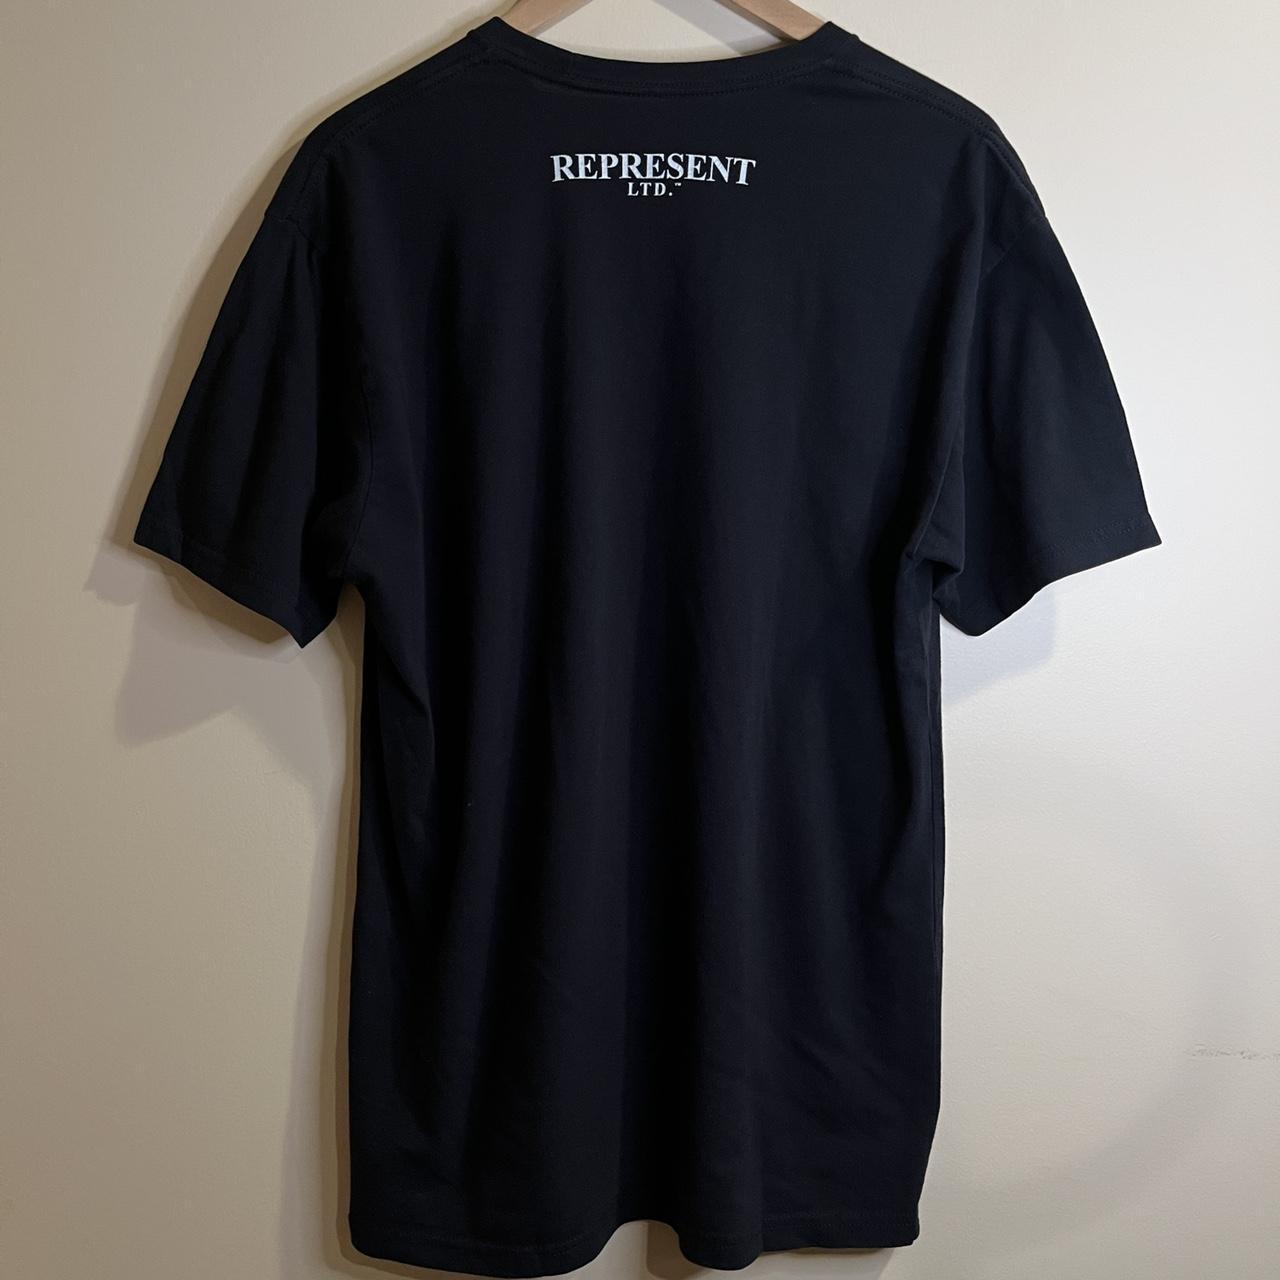 Represent Men's Black T-shirt (2)